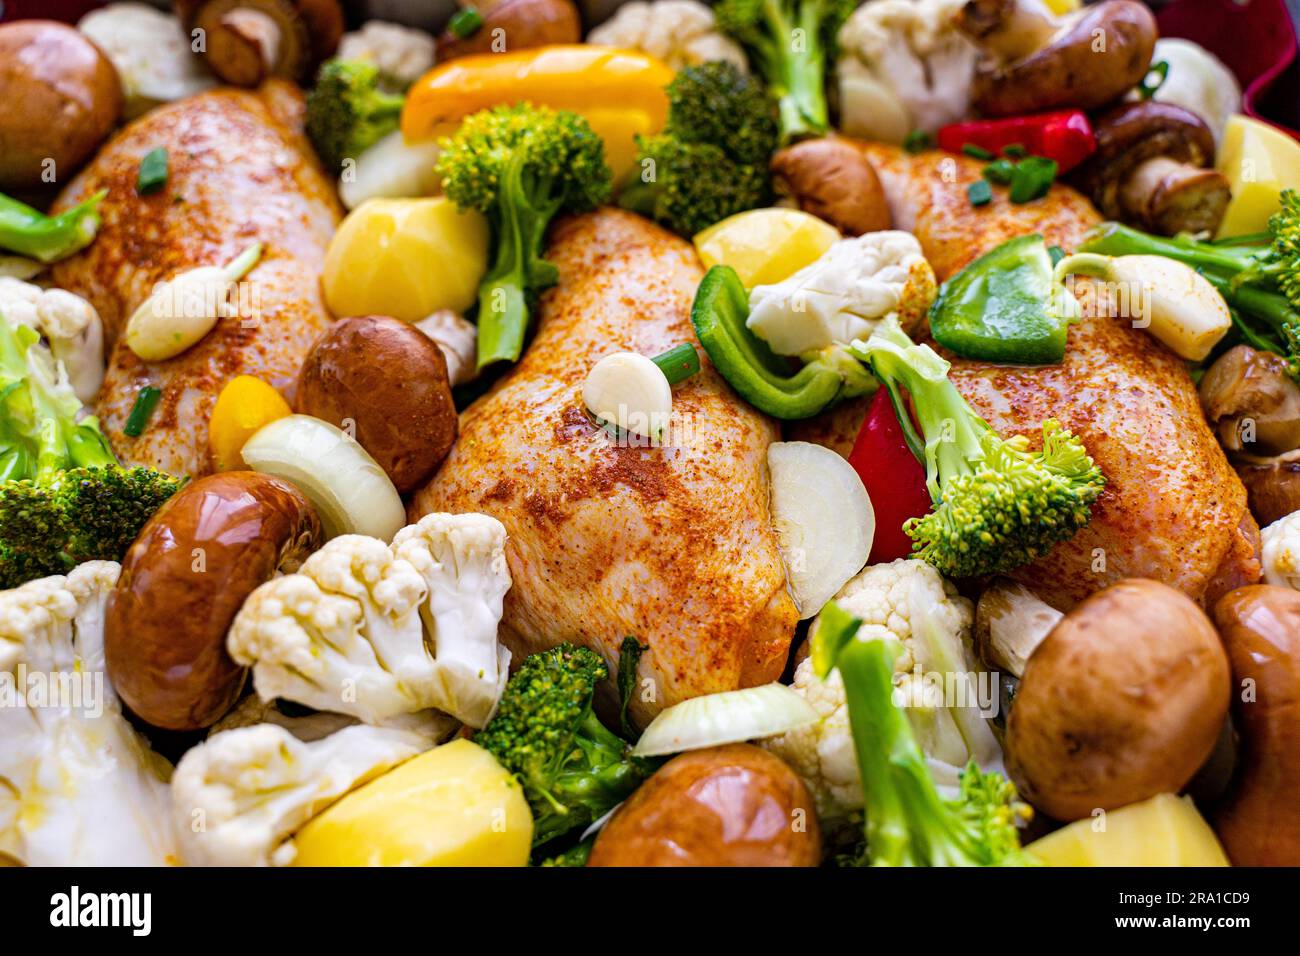 Un repas fraîchement cuit de poulet et de légumes rôtis, dont le brocoli et les pommes de terre Banque D'Images